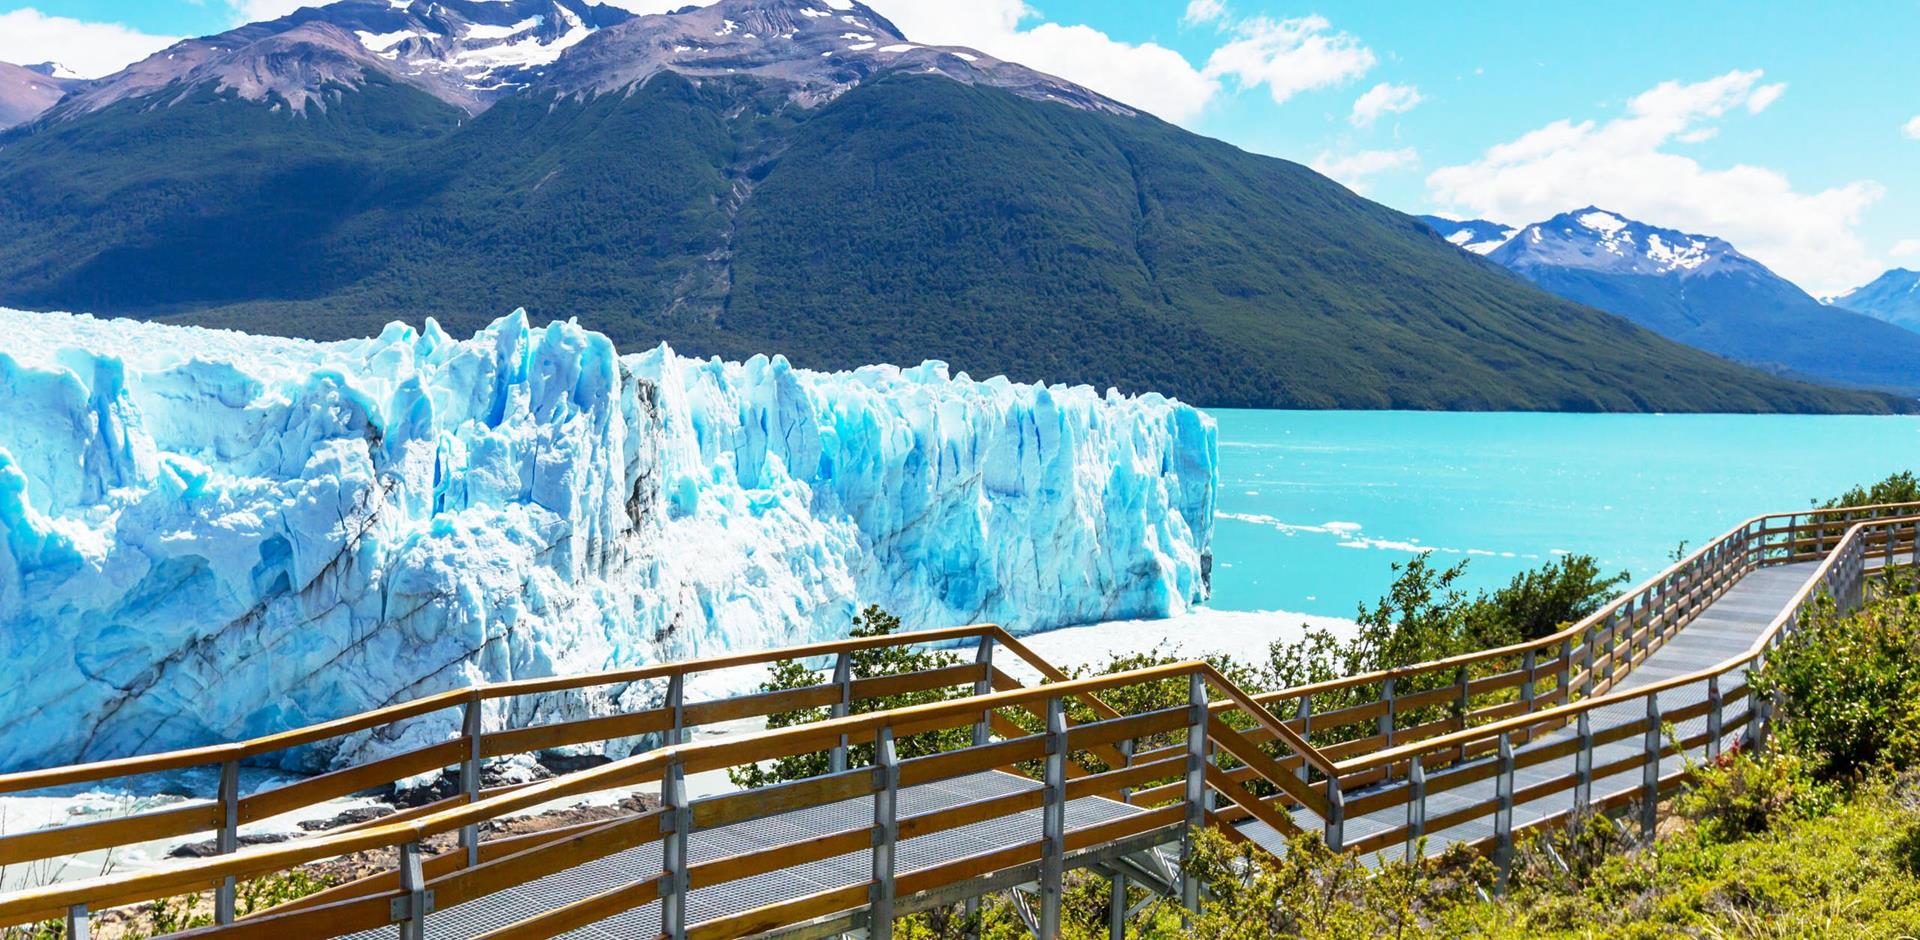 Perito Moreno glacier, Lake Argentino